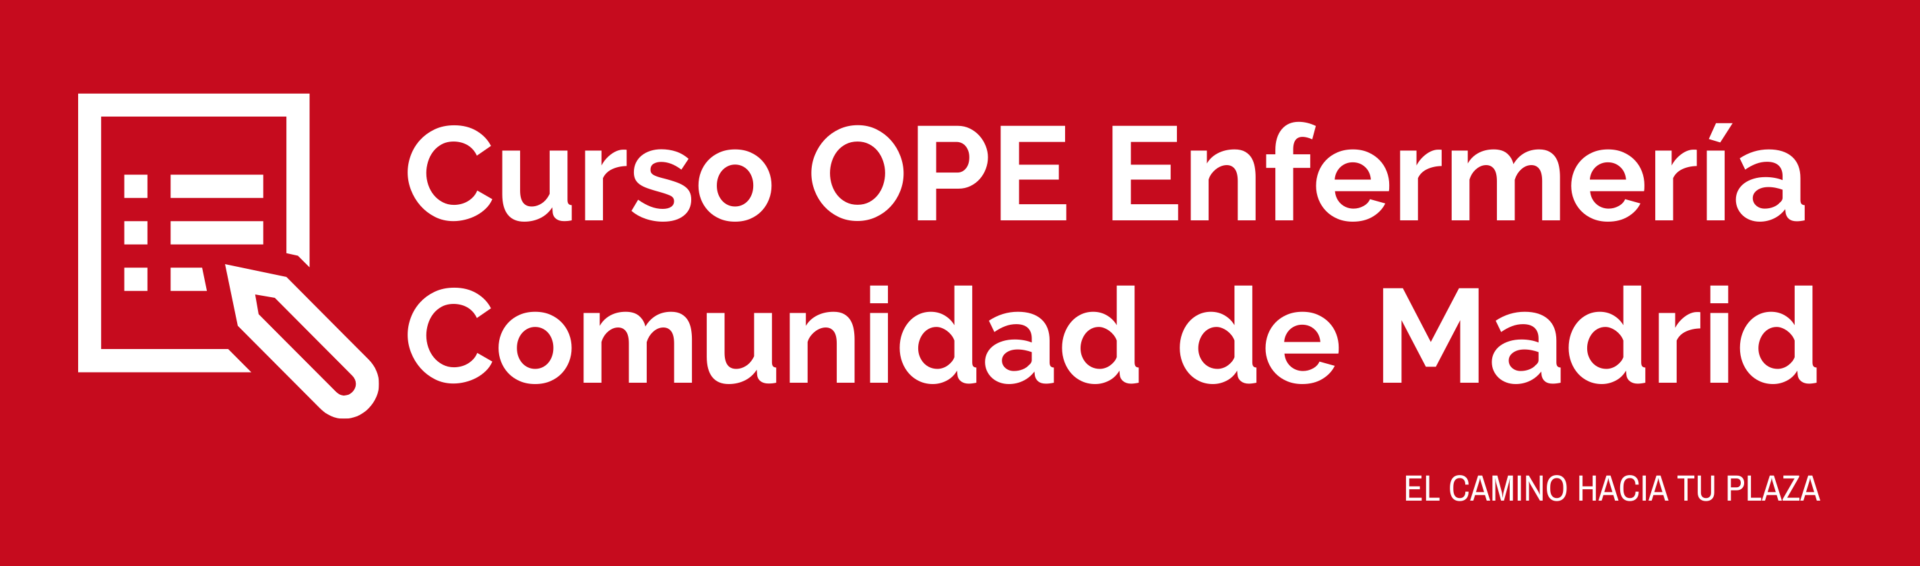 Curso OPE Enfermería Comunidad de Madrid